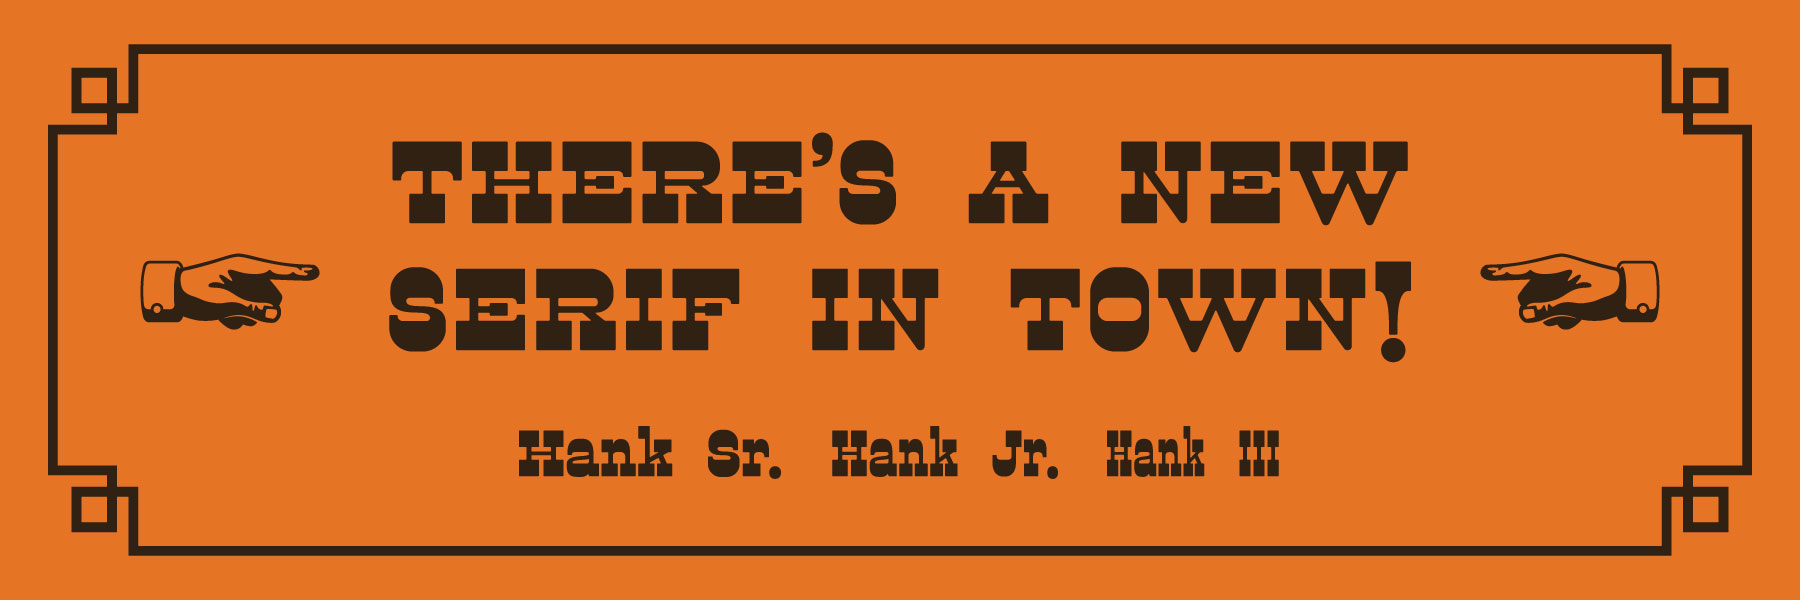 There’s a new serif in town! Hank Sr. Hank Jr. Hank III